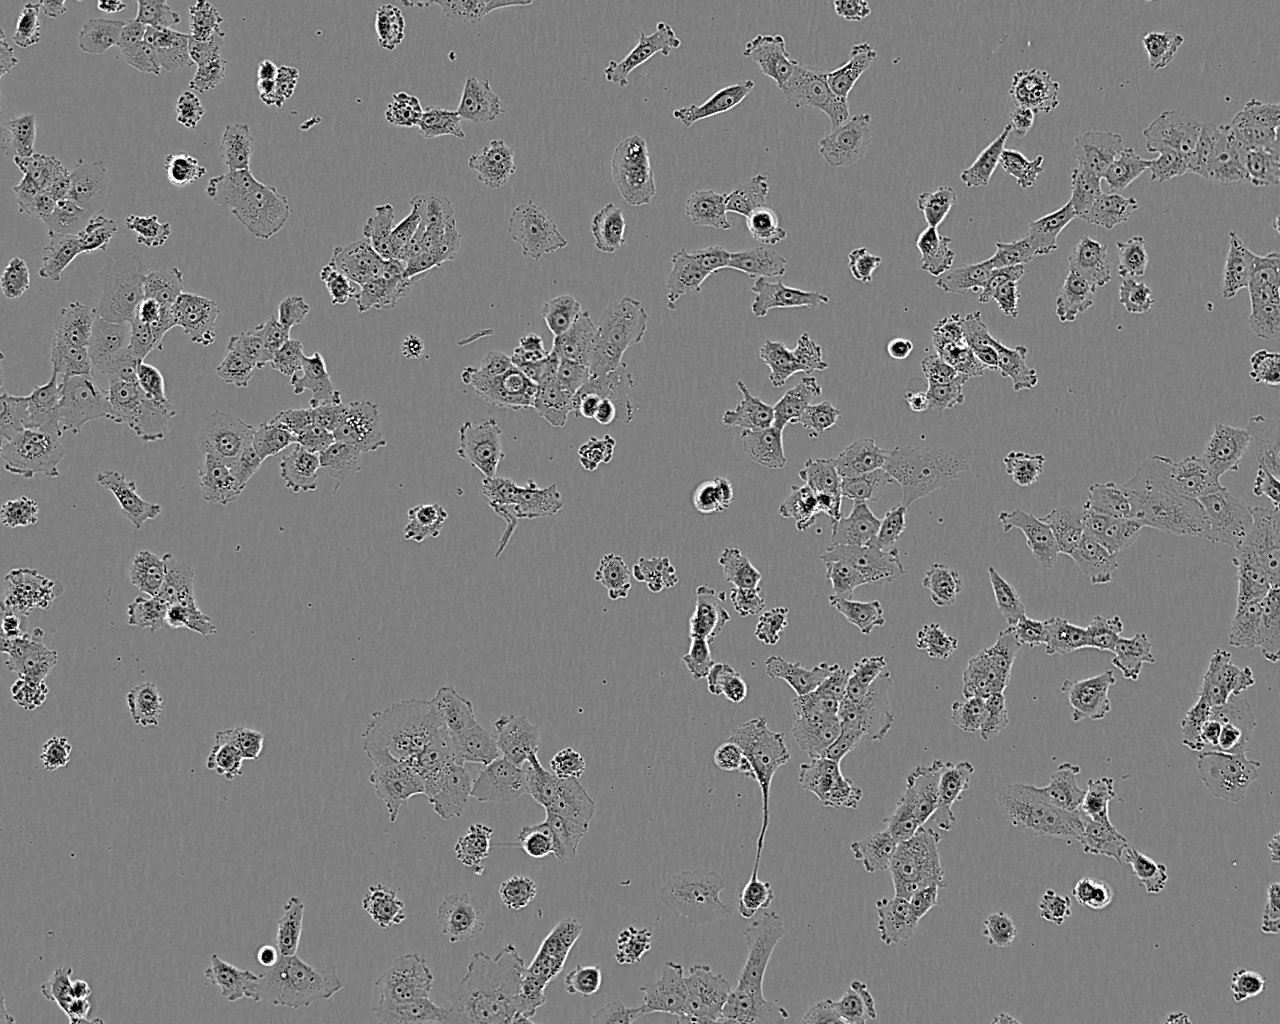 HCC1806 epithelioid cells人乳腺鳞状癌细胞系,HCC1806 epithelioid cells